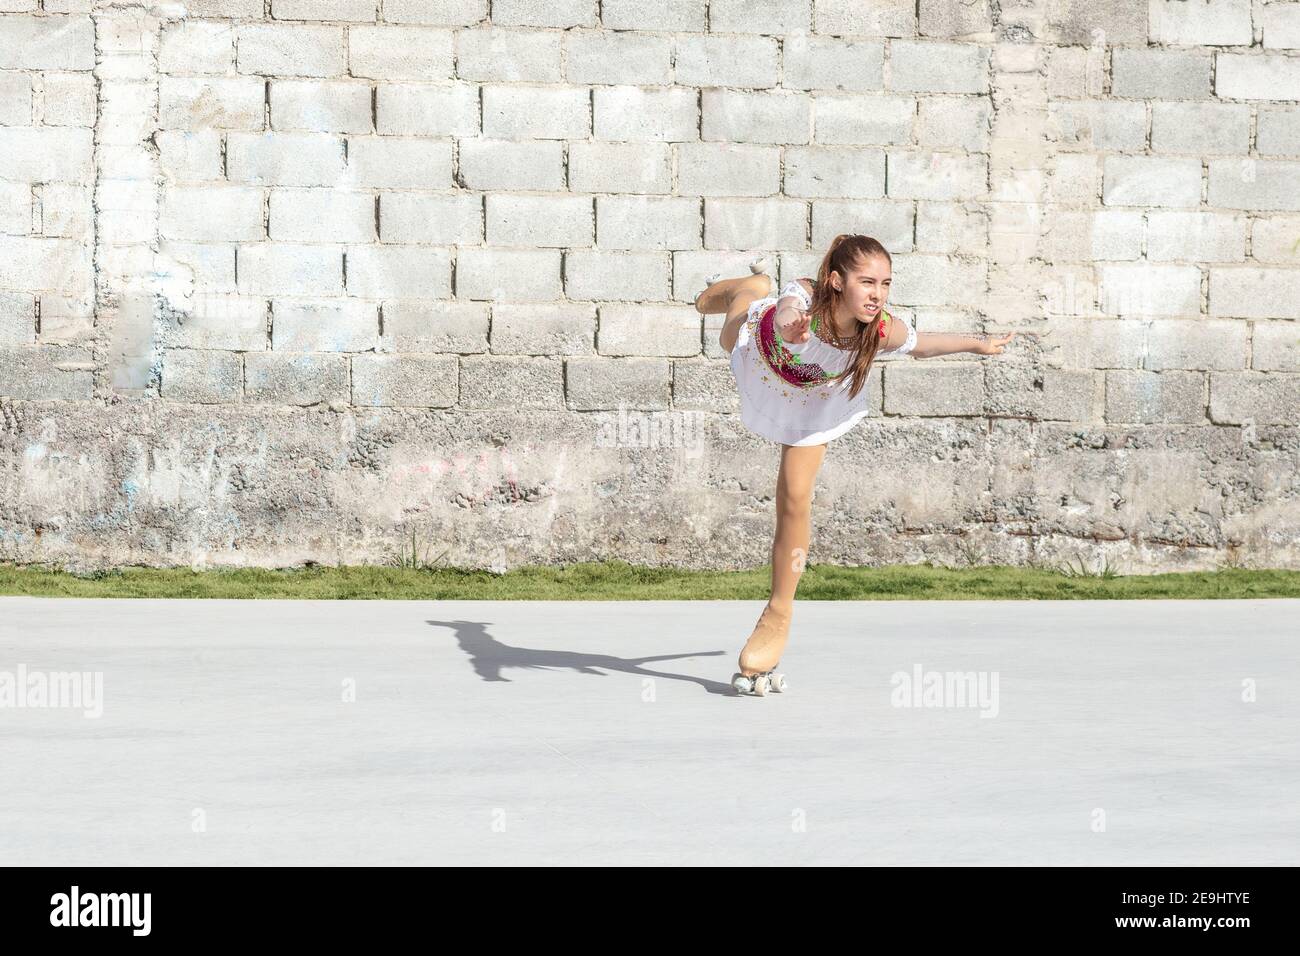 Adolescente faisant une figure à roulettes patinage artistique patinage artistique sur une jambe de la patinoire. Banque D'Images